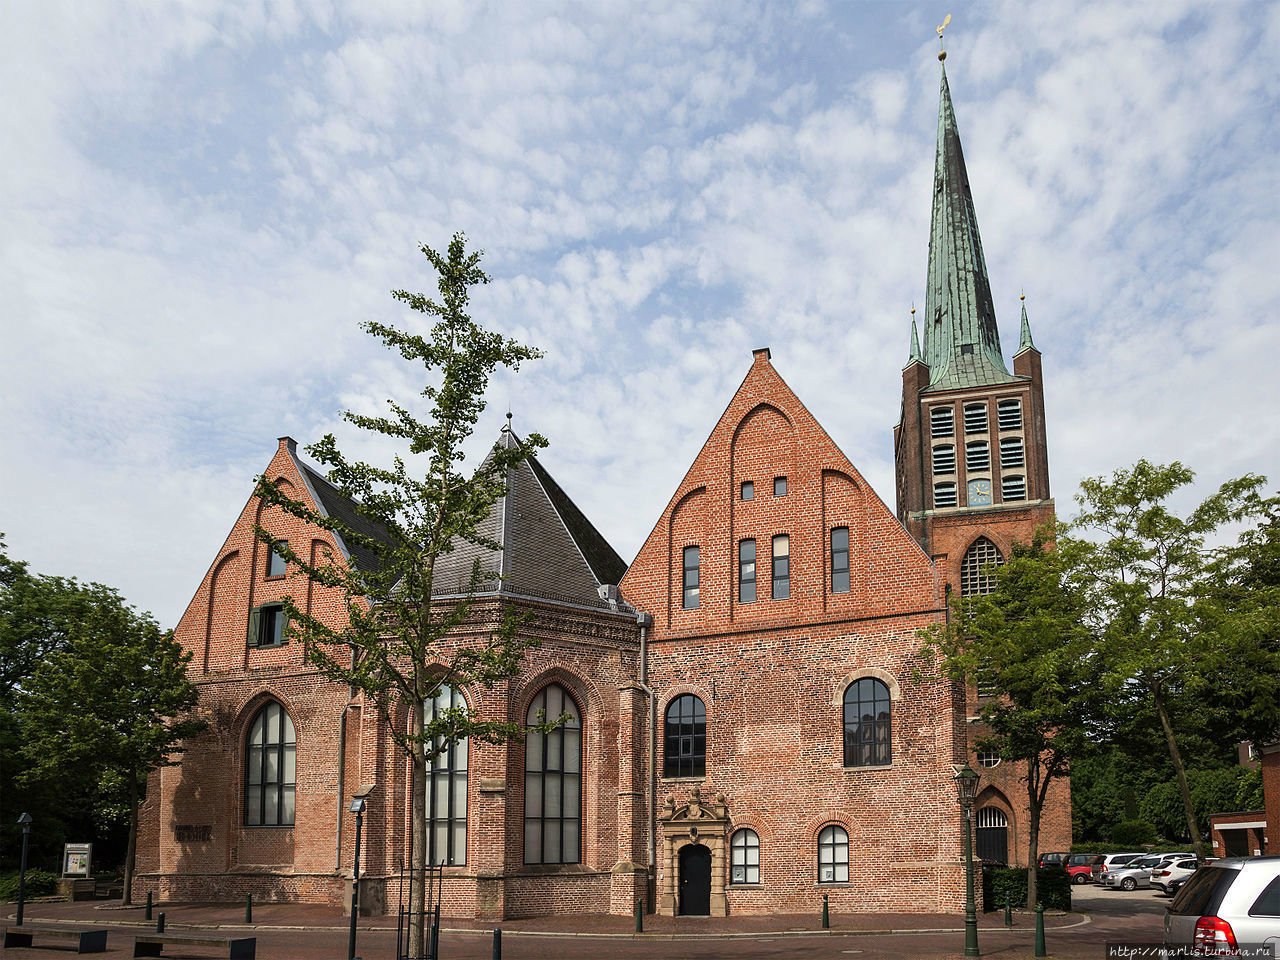 Большая церковь, теперь Библиотека реформации им. Johannes a Lasco. foto Internet Эмден, Германия